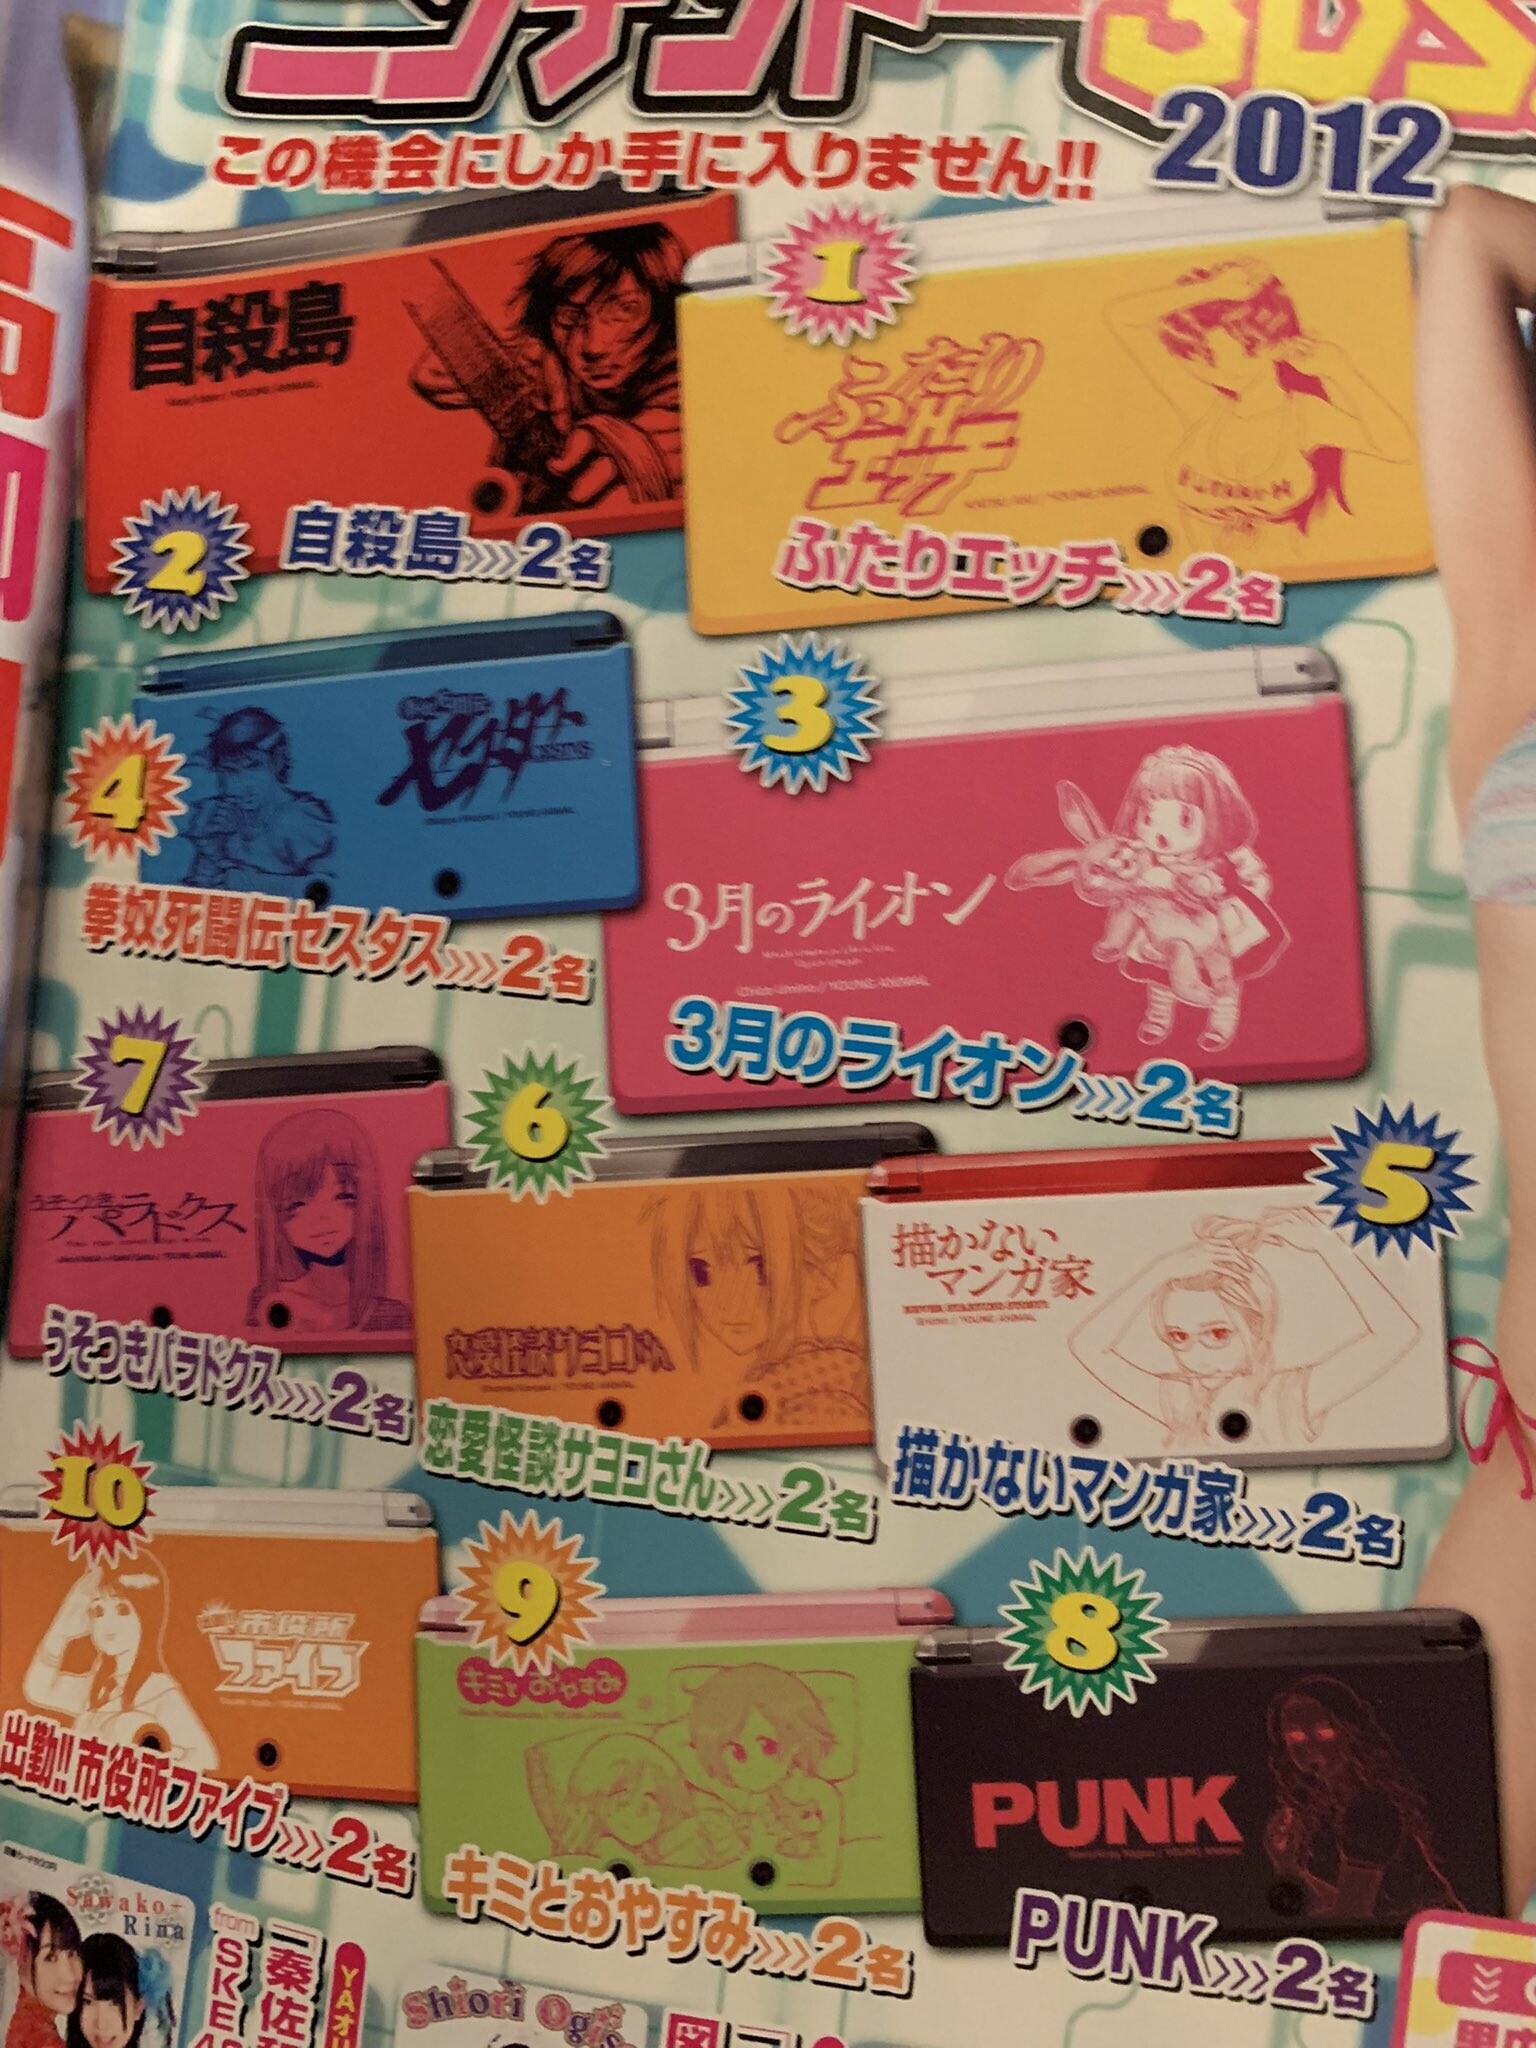  Nintendo 3DS Young Animal Manga Covers